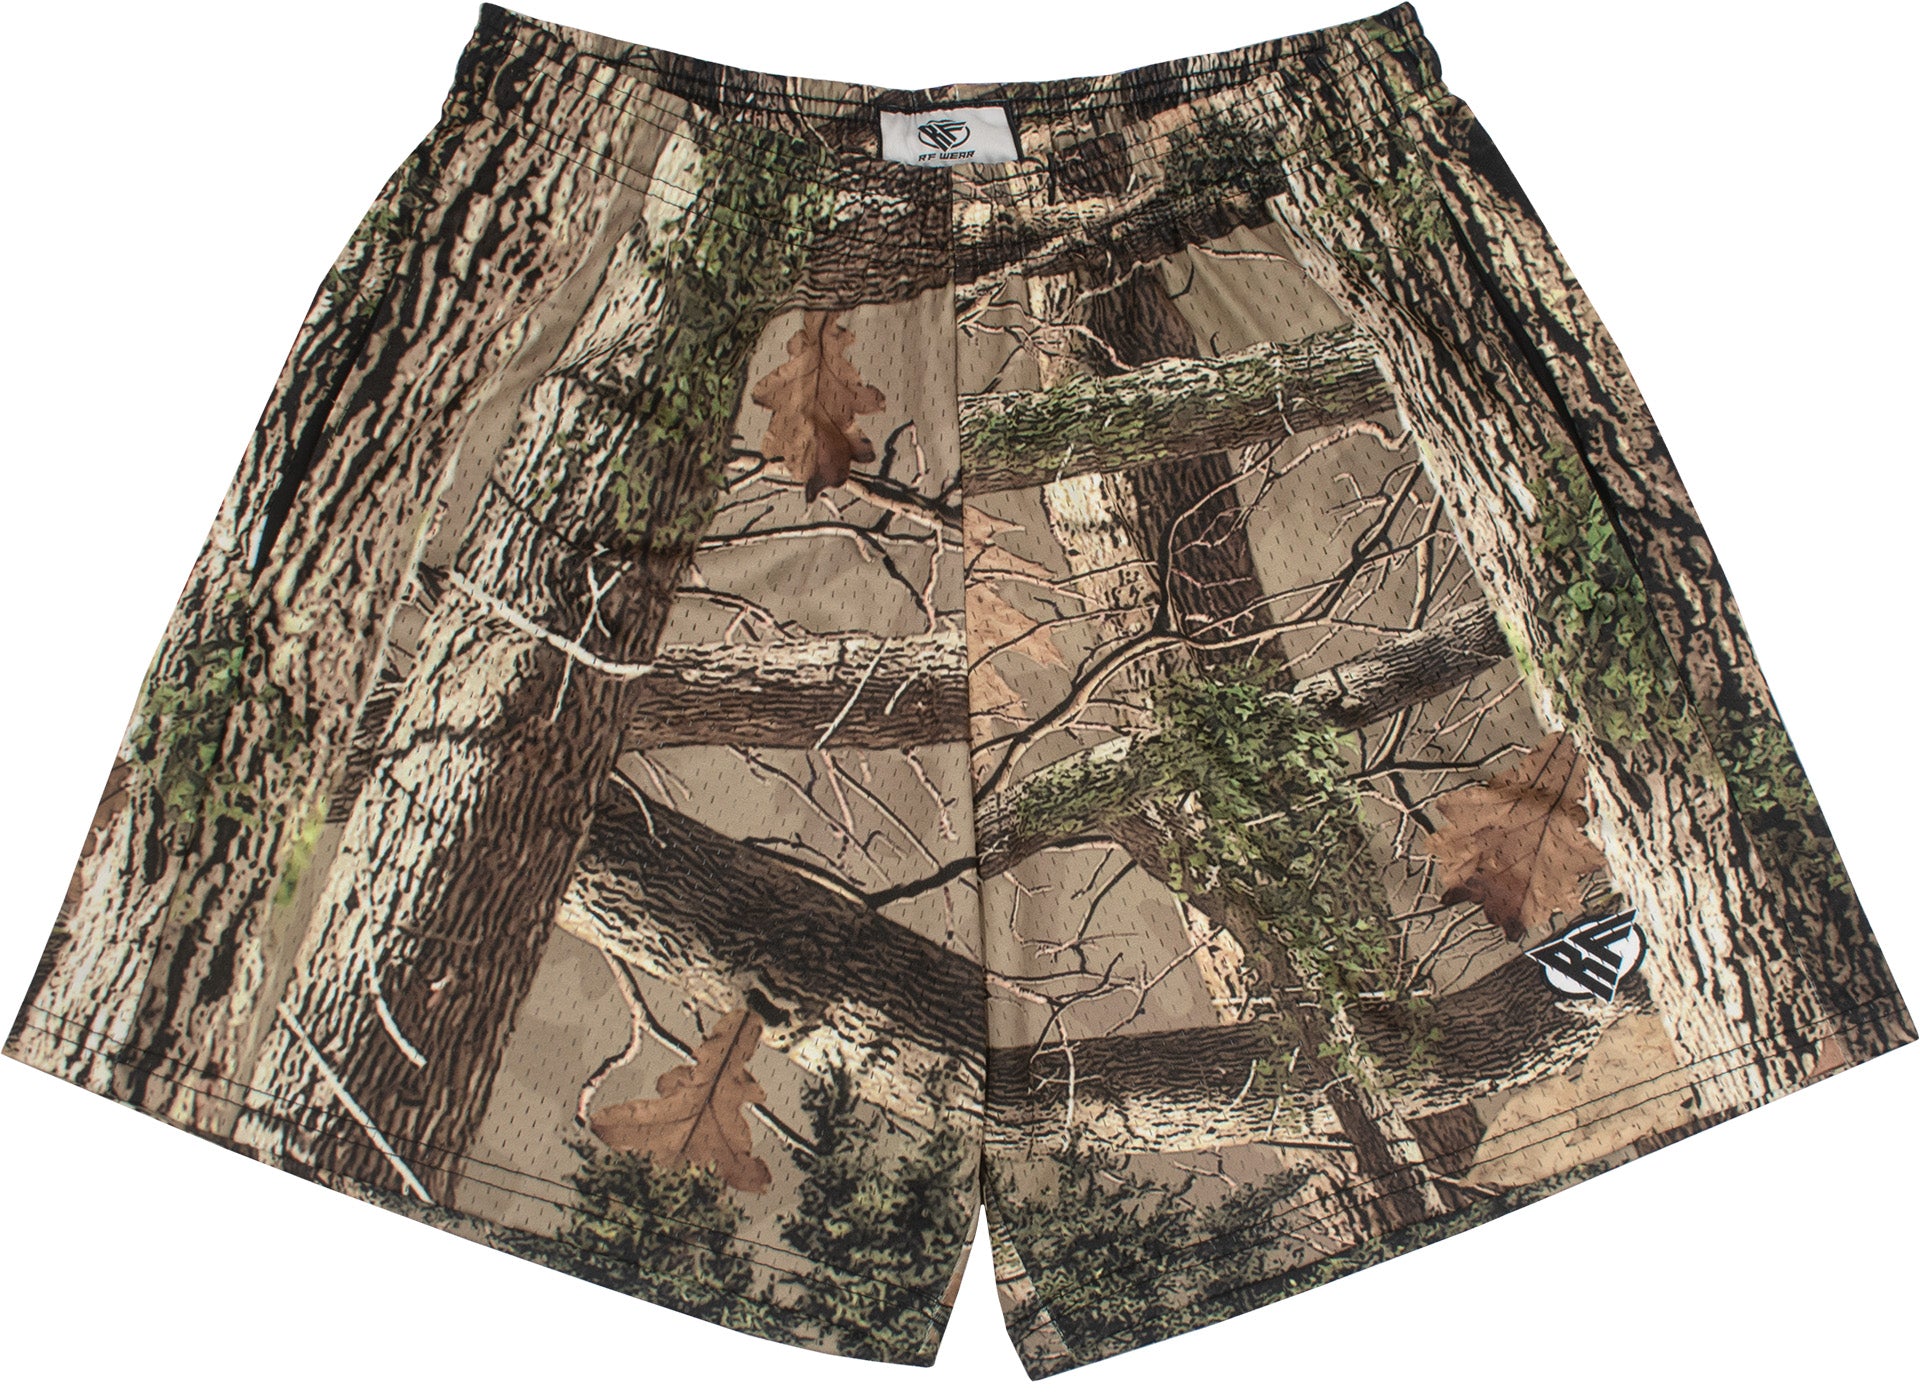 Training Shorts - Woodland Camo